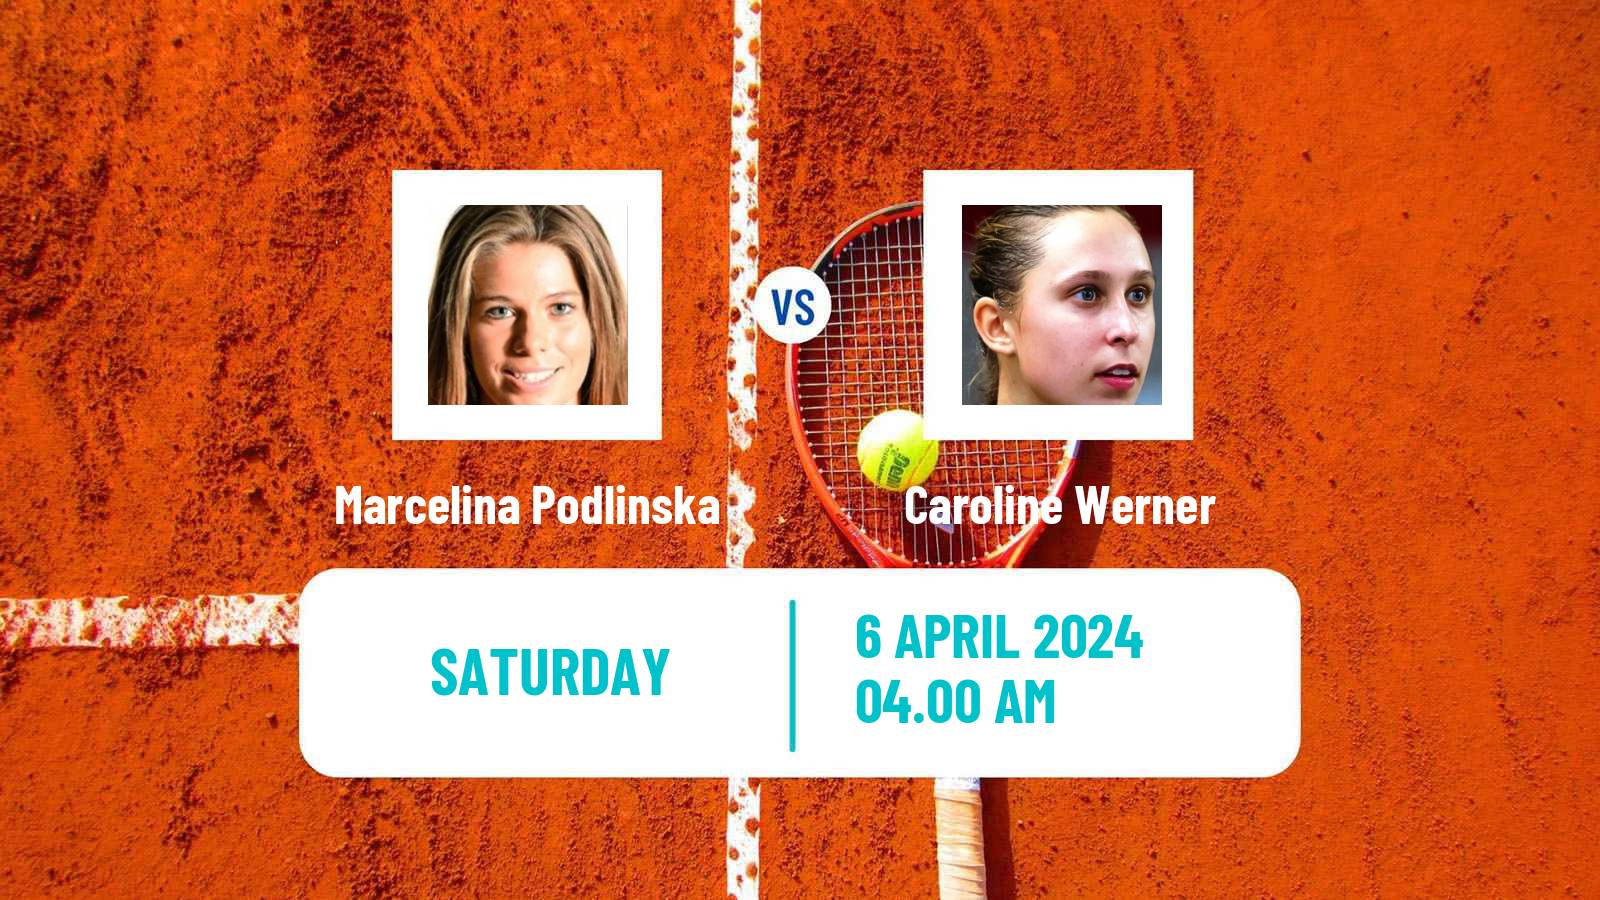 Tennis ITF W15 Telde Women Marcelina Podlinska - Caroline Werner